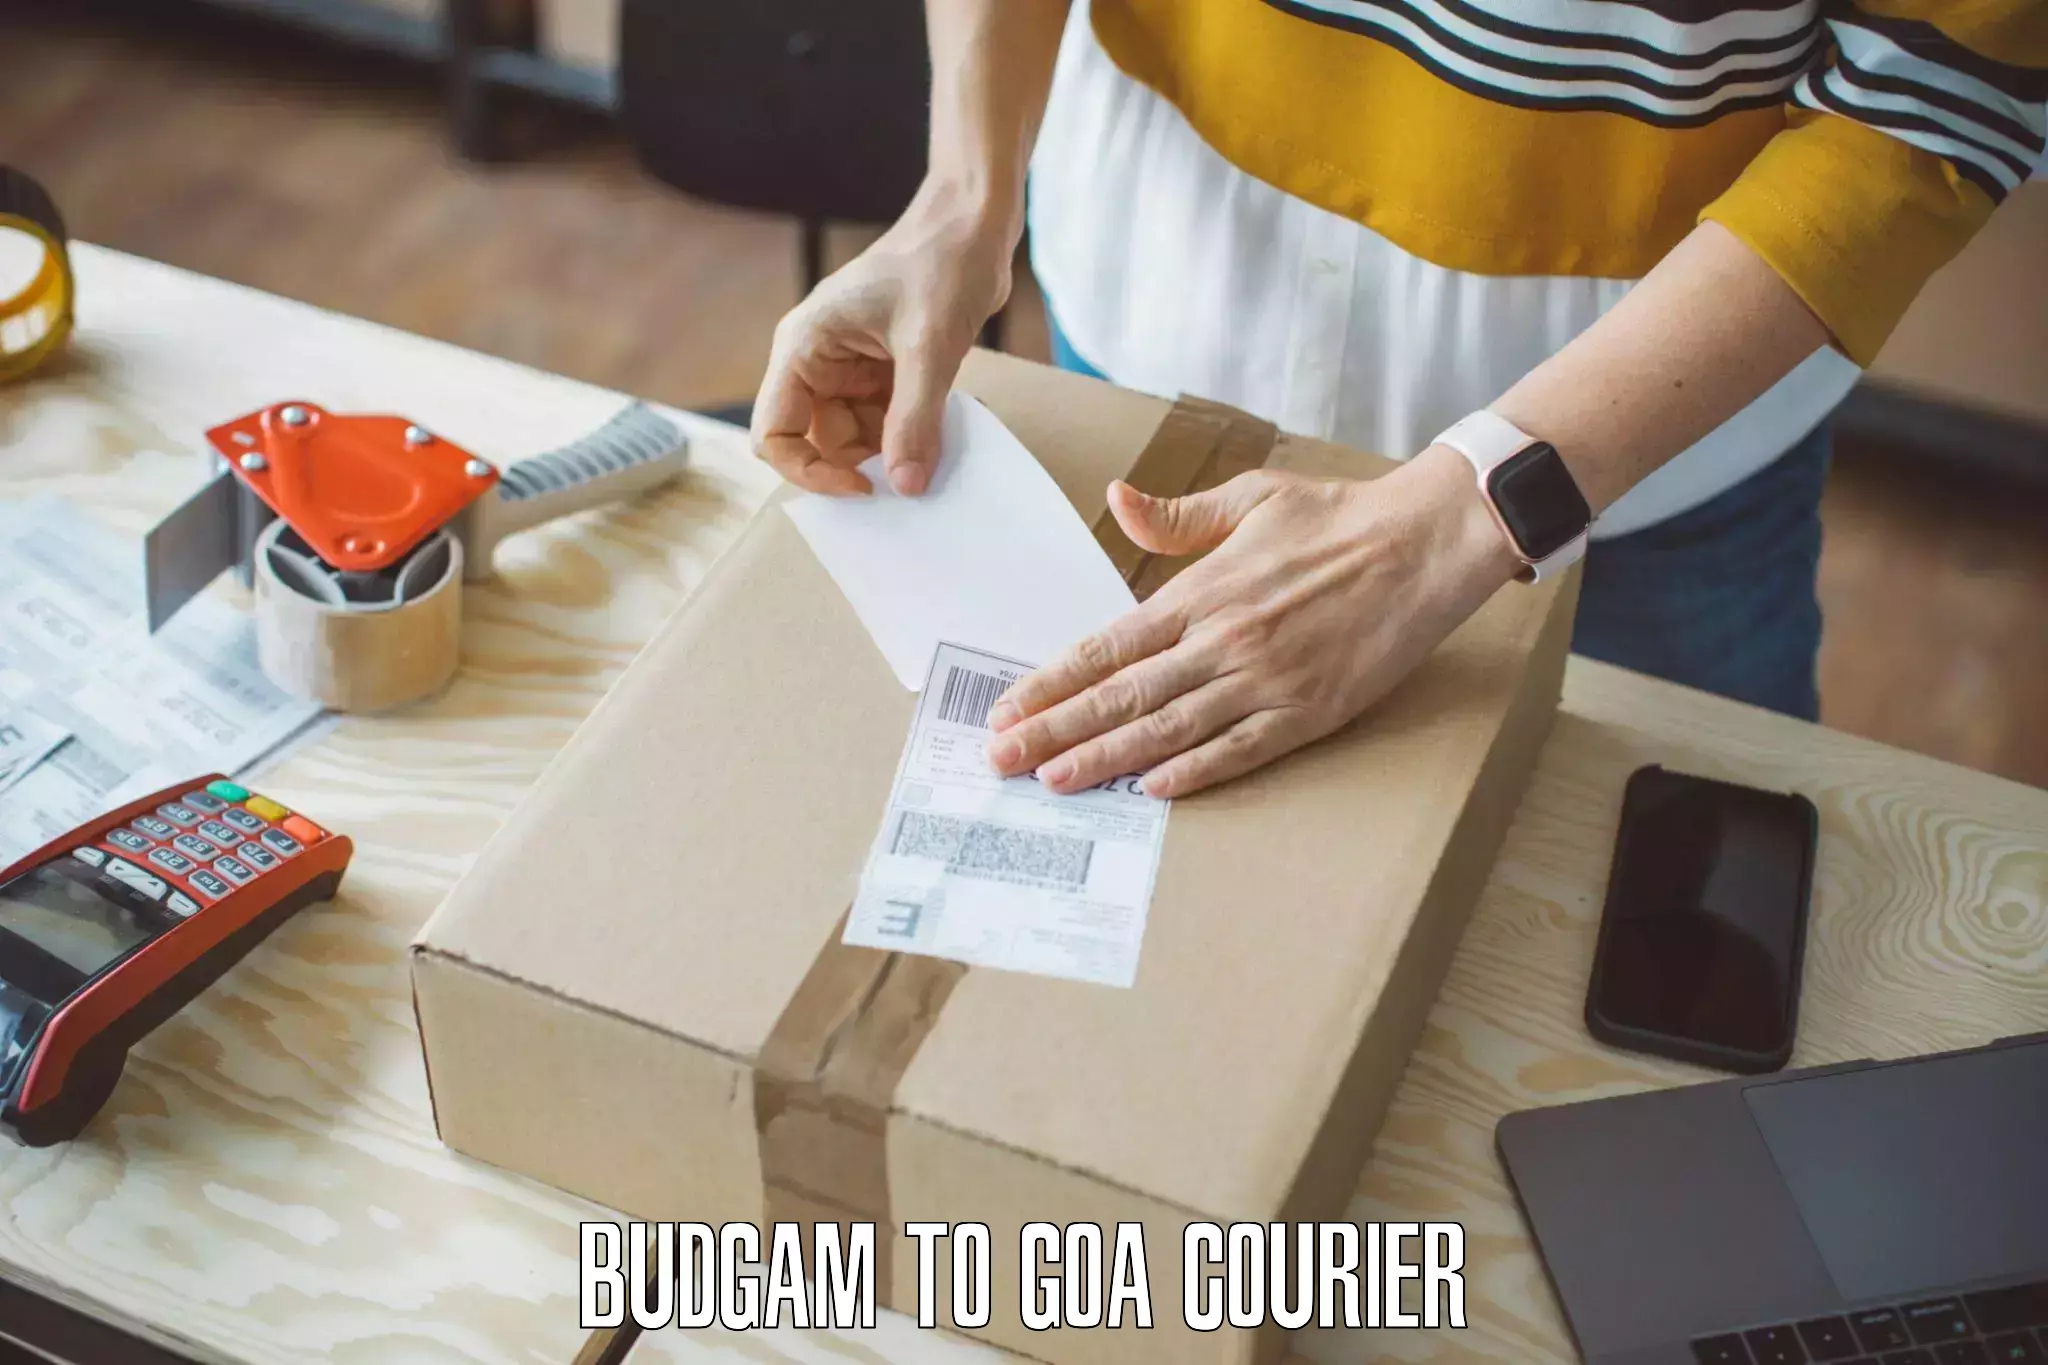 Home goods moving company Budgam to Goa